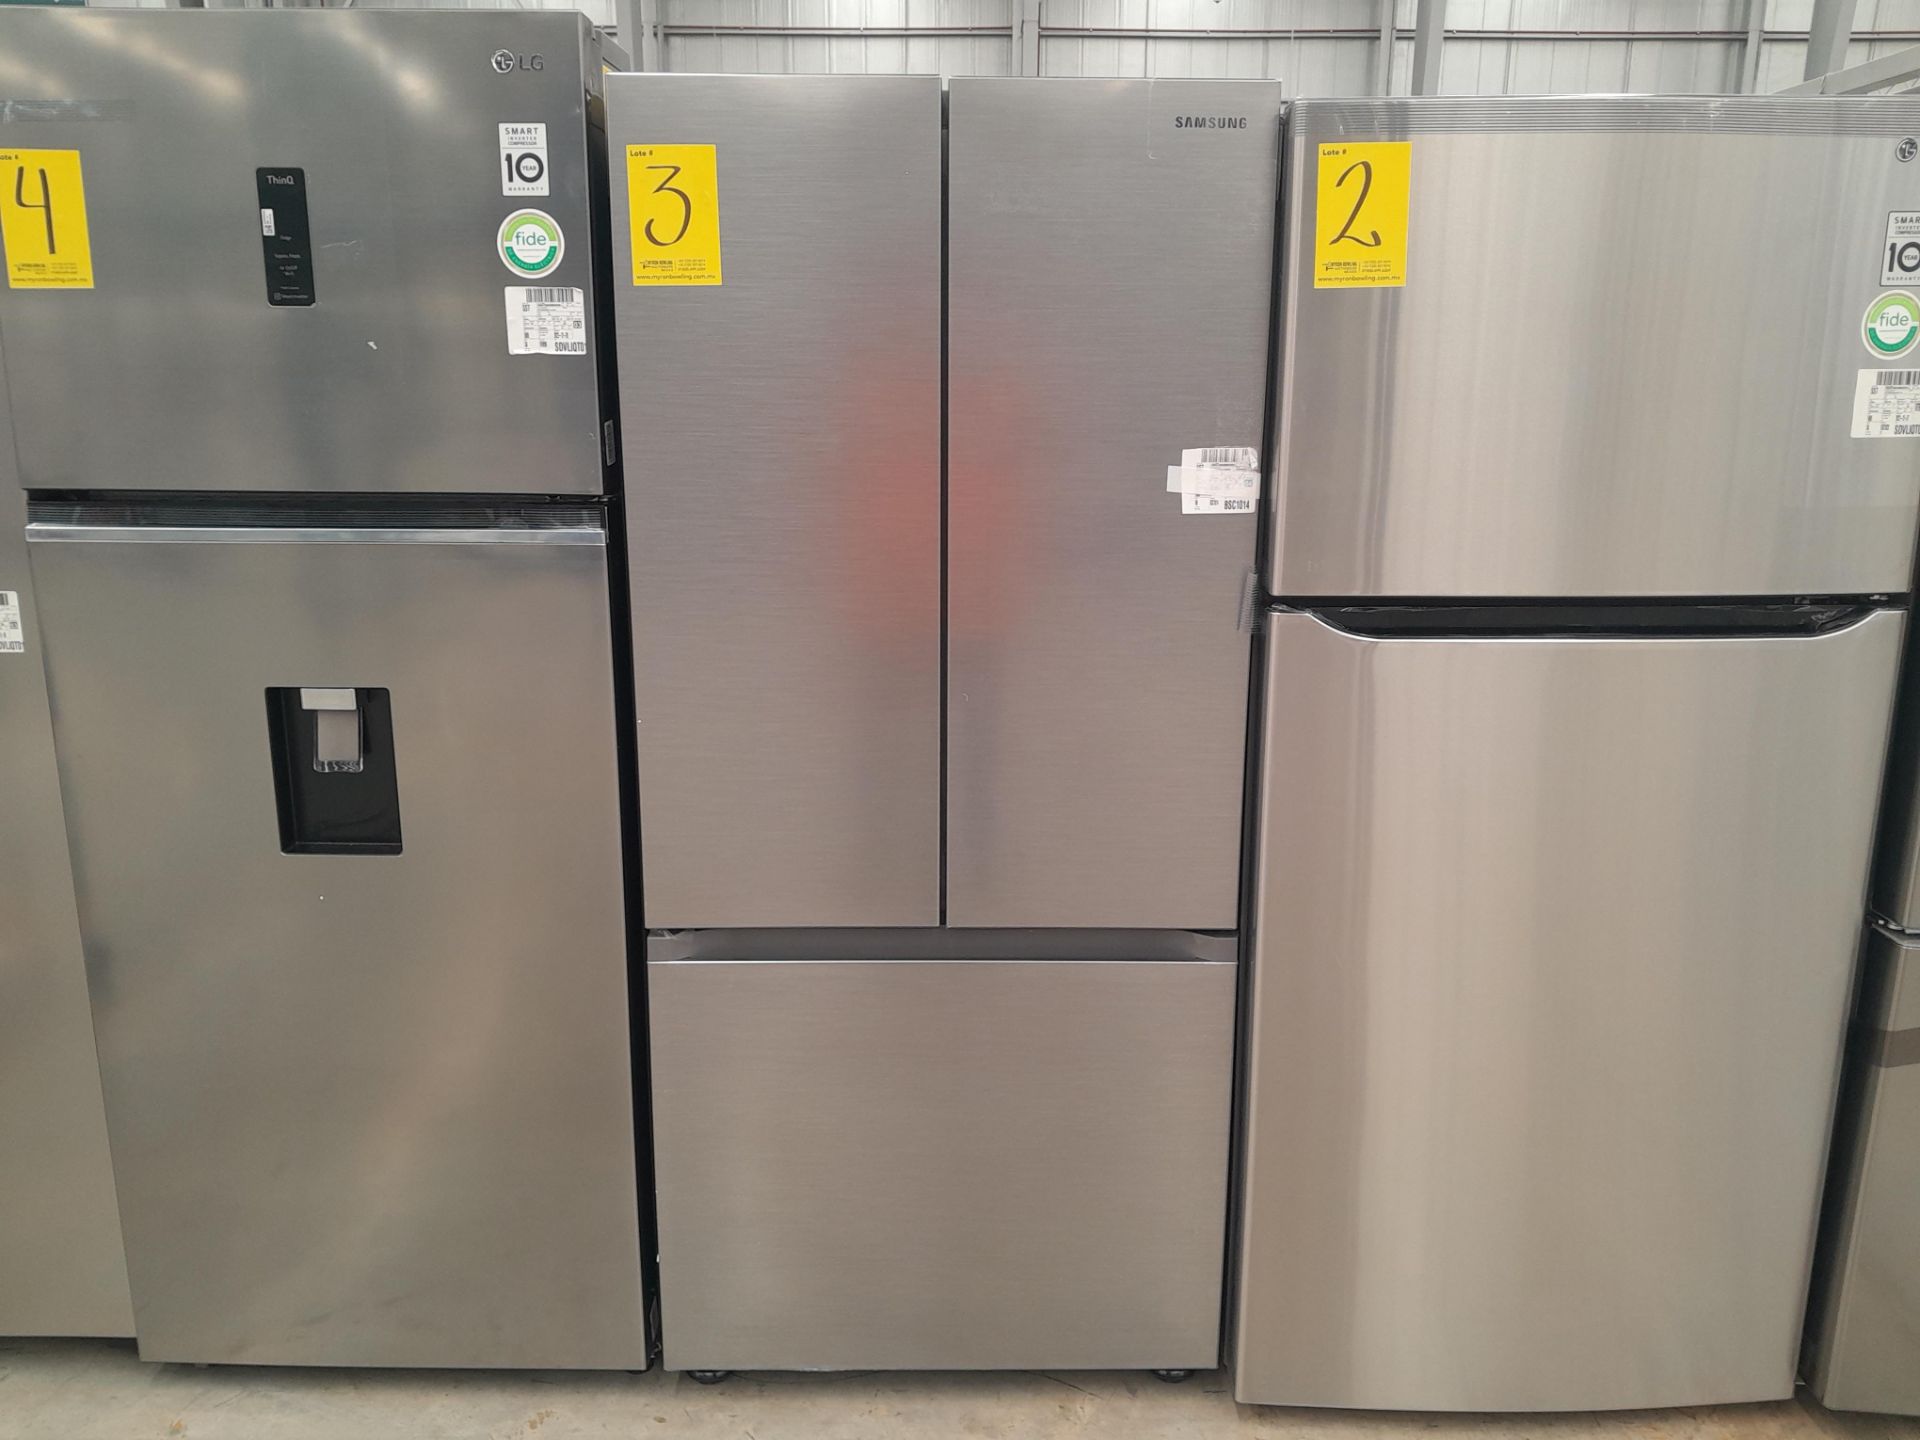 (NUEVO) Lote de 1 Refrigerador Marca SAMSUNG, Modelo RF22A4010S9, Serie 02400N, Color GRIS